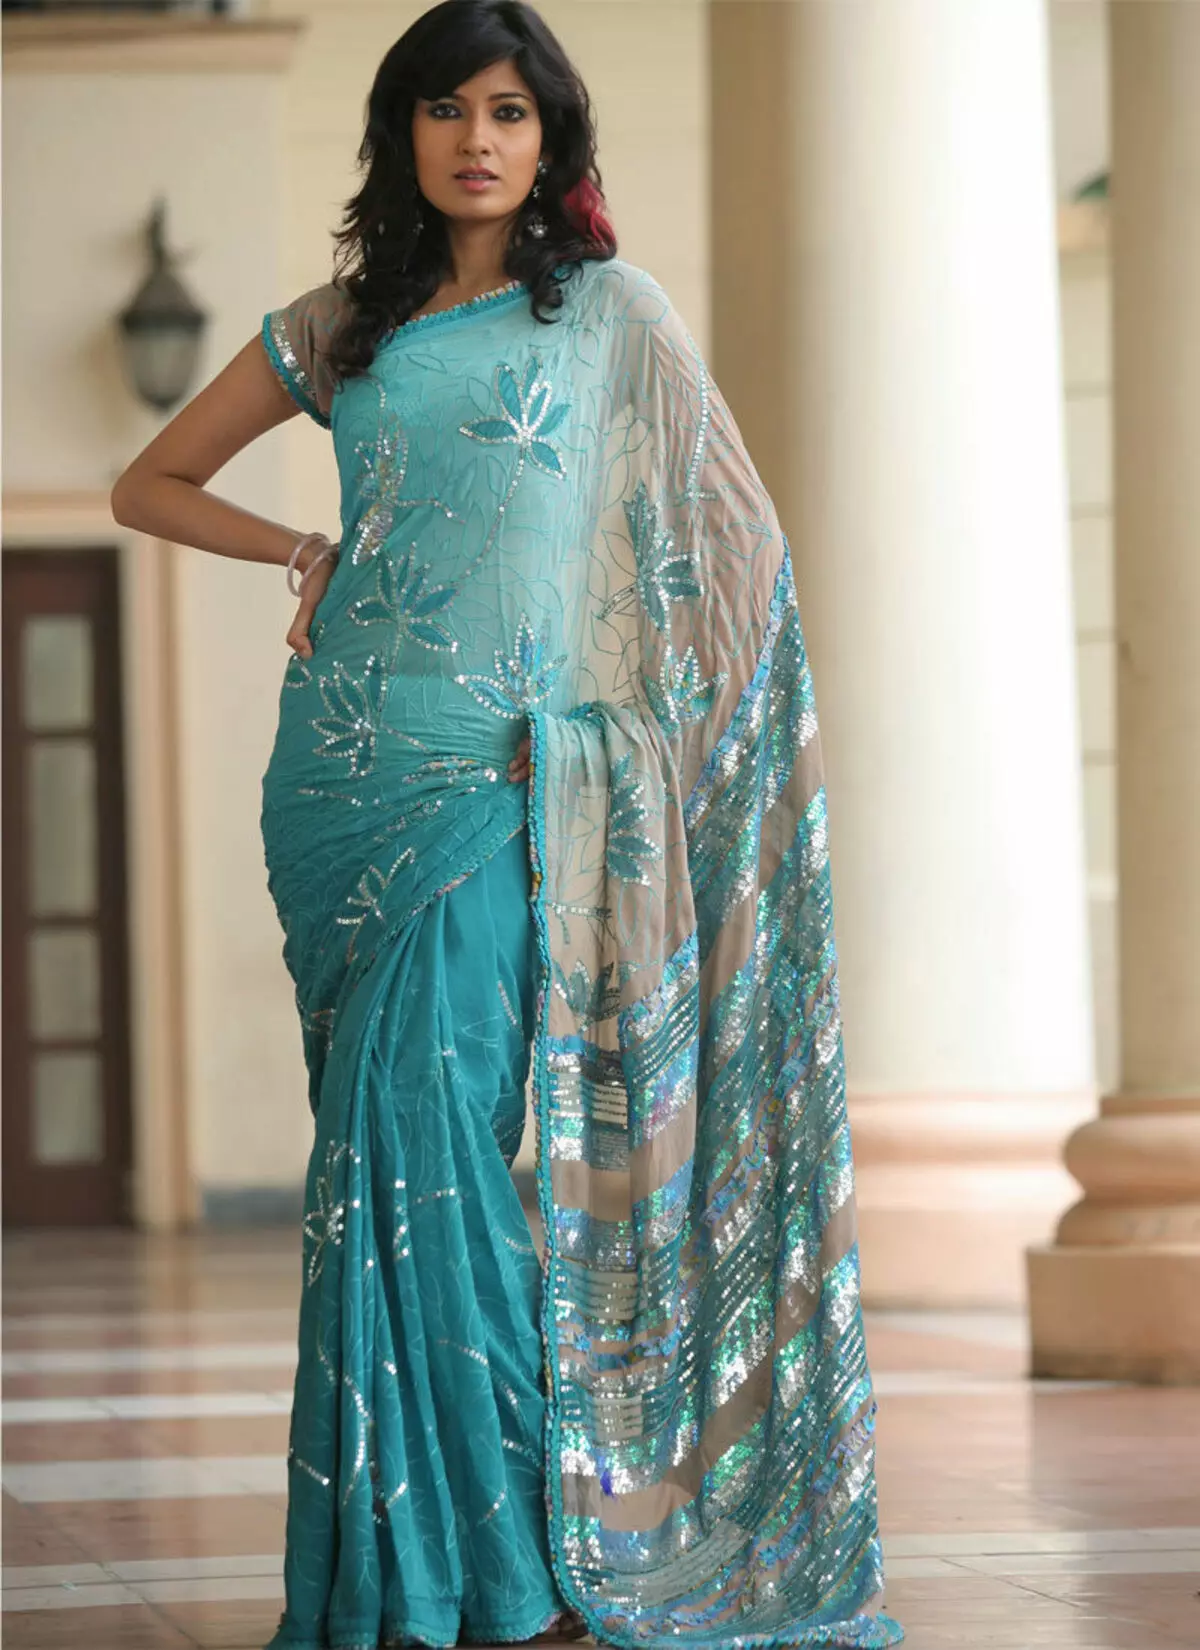 Sari dress აღმოსავლურ სტილში